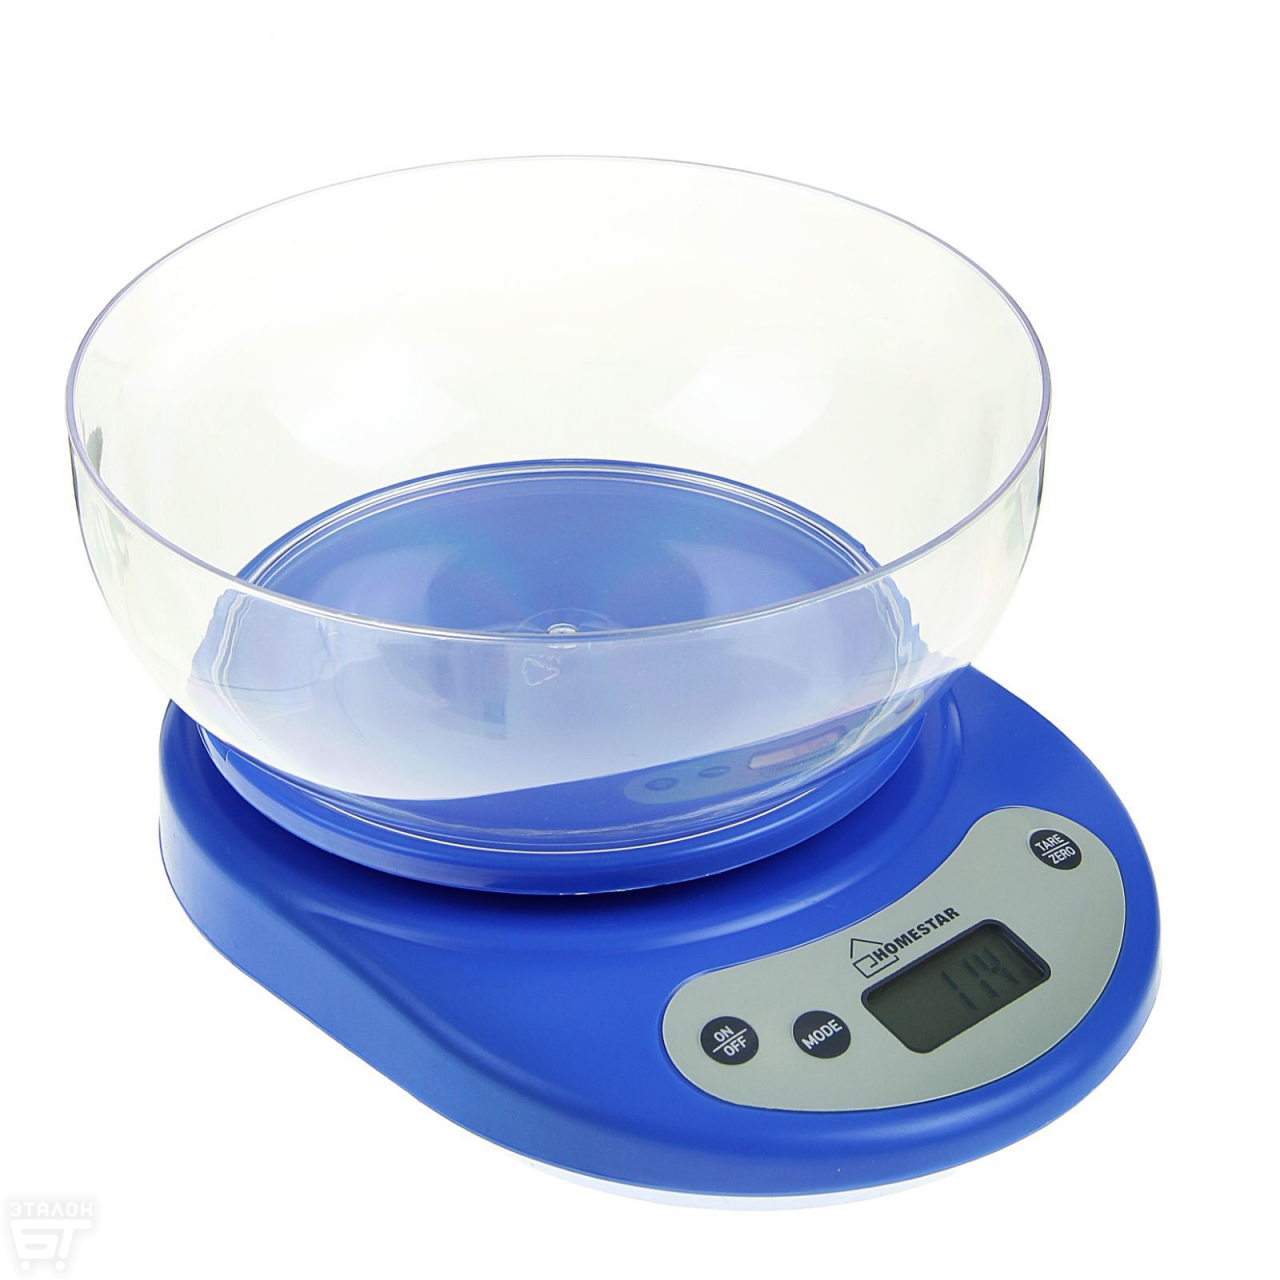 Весы кухонные HOMESTAR HS-3001, электронные, до 5 кг, автоотключение, голубые 1867035